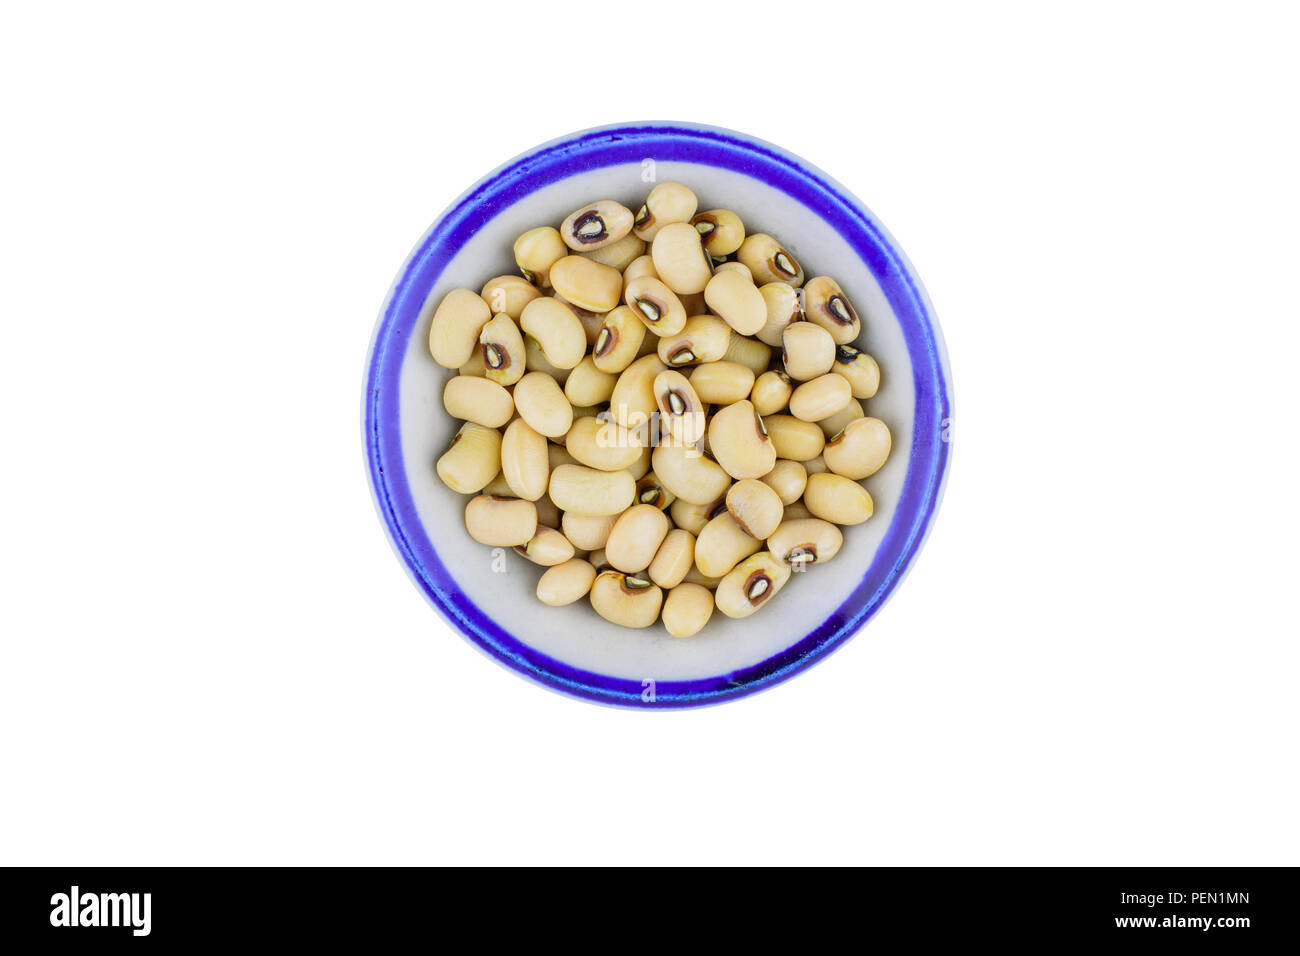 Haricots blancs dans un bol isolé sur fond blanc avec chemin de coupure de l'alimentation et la nutrition saine.concept. Banque D'Images